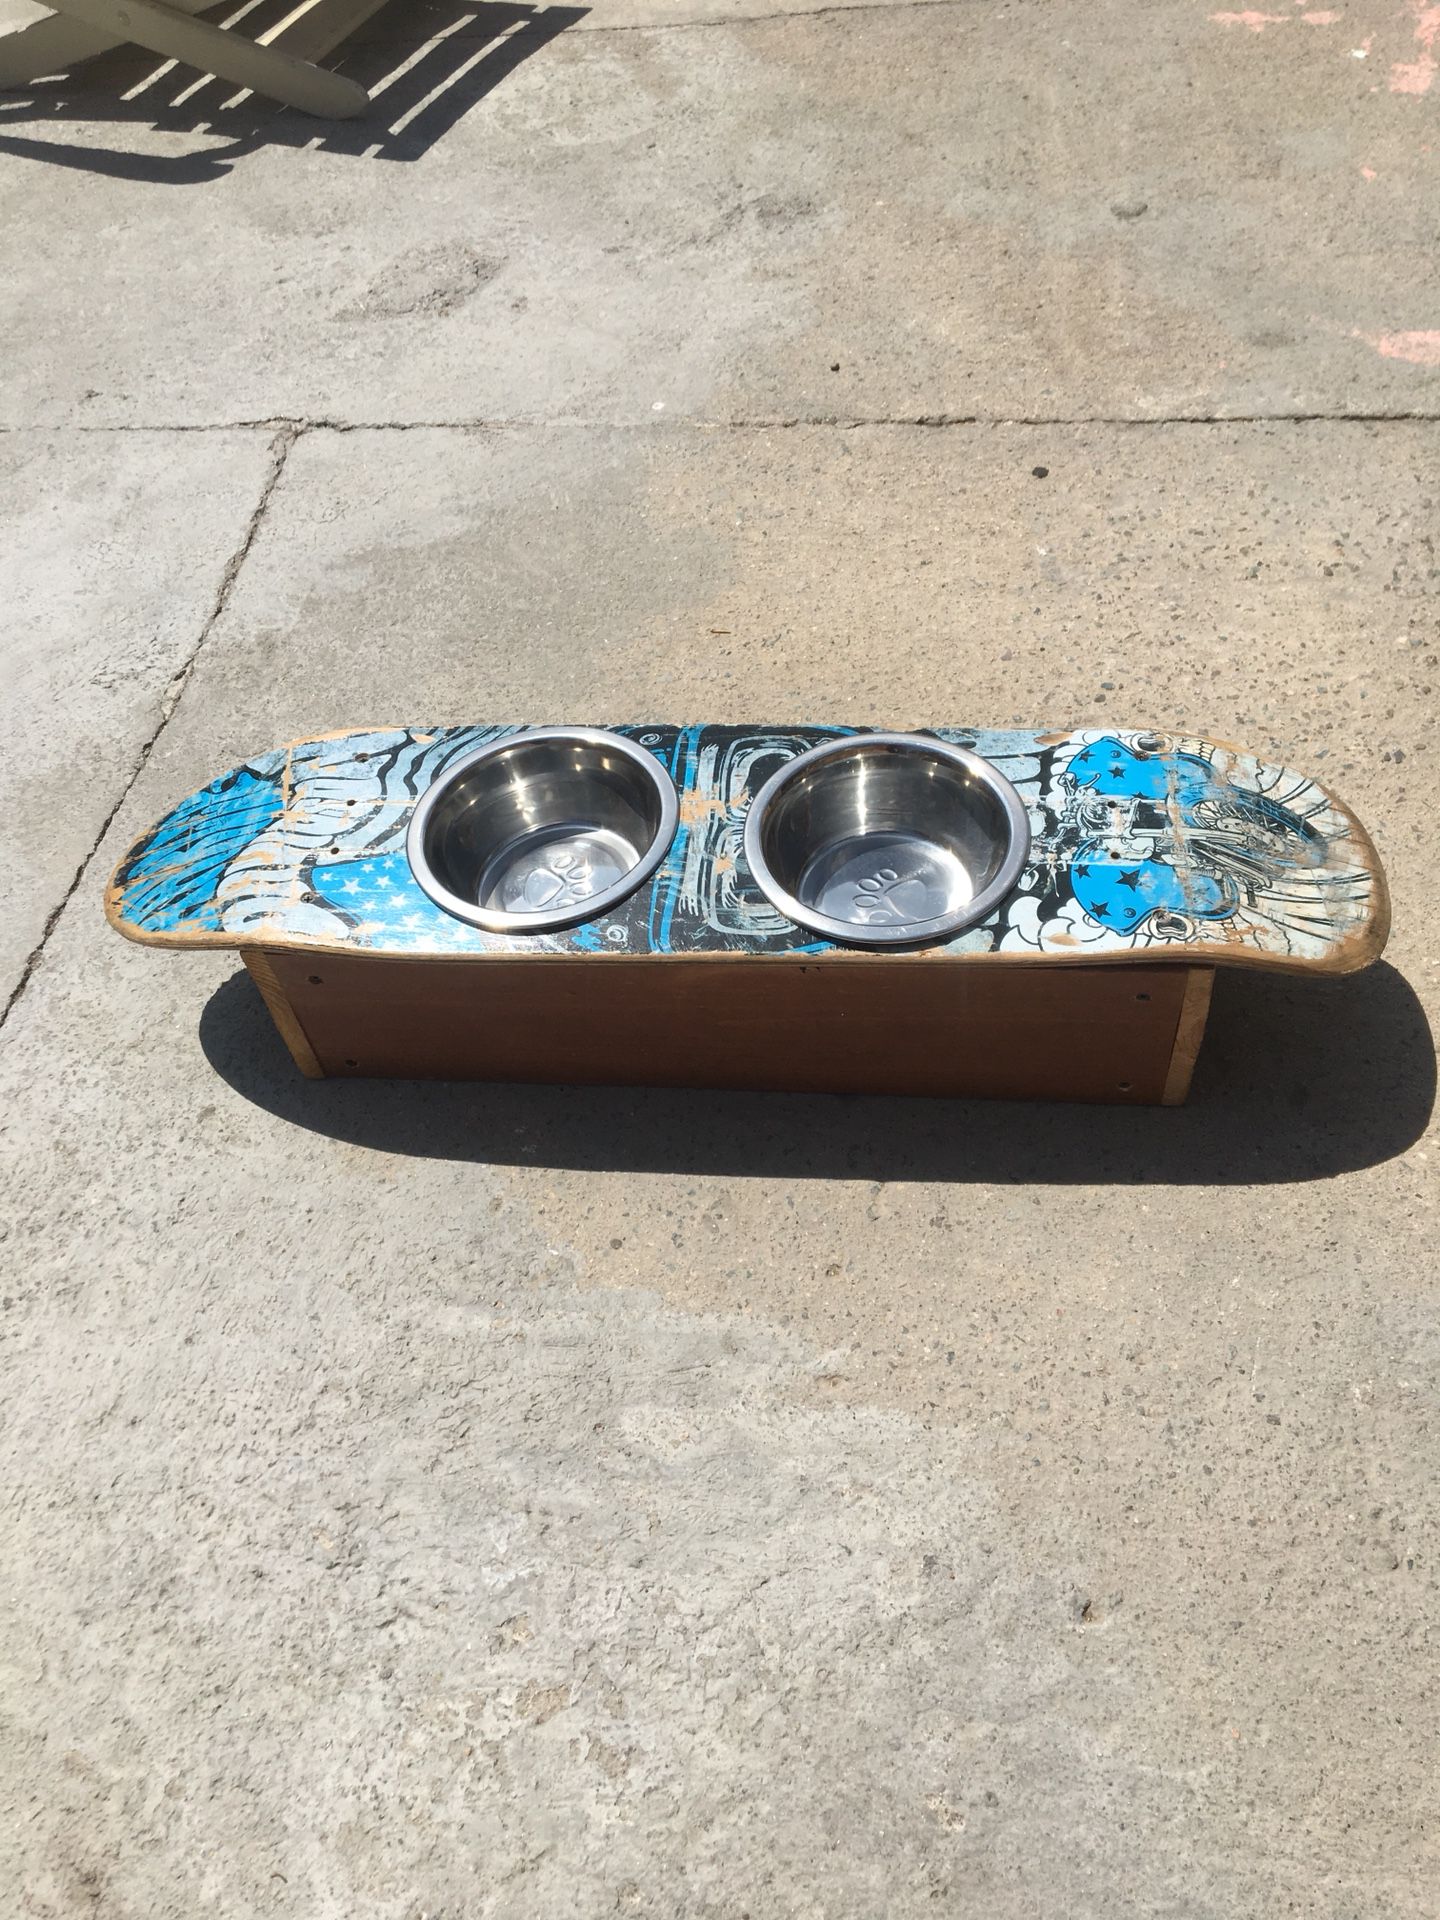 Harley Davidson skateboard deck dog food bowl holder